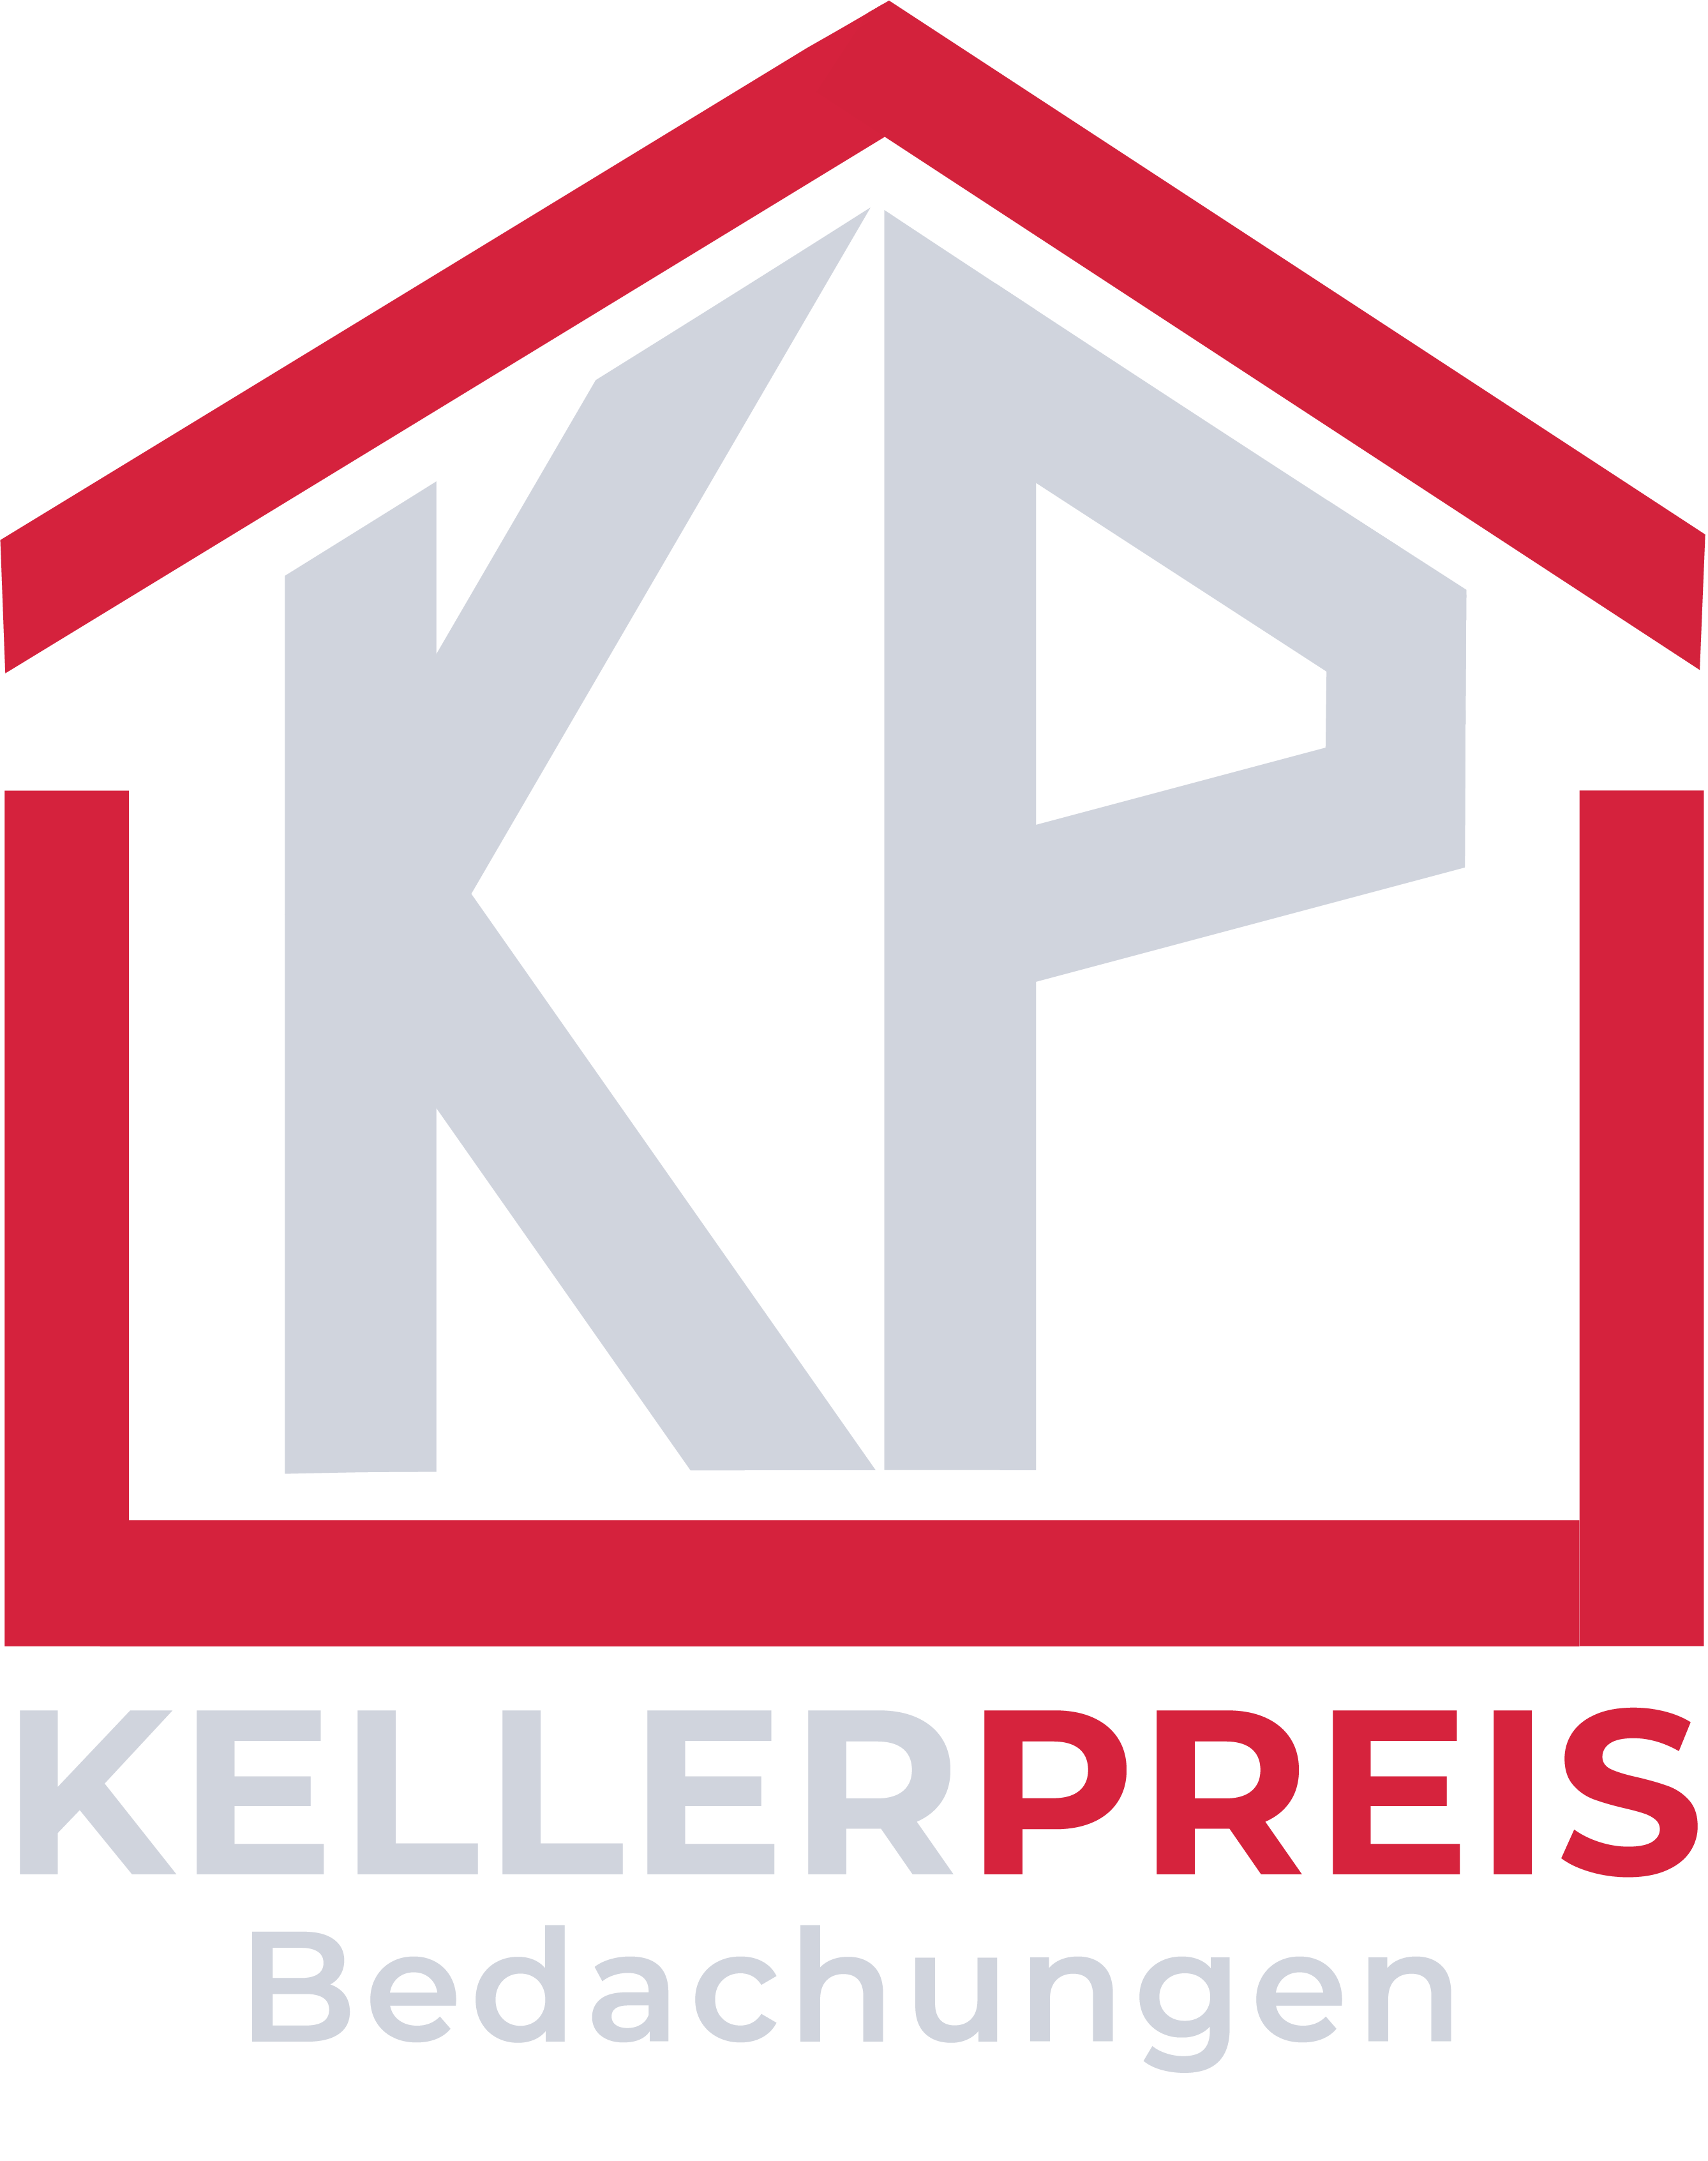 Logo Keller-Preis Bedachungen FINAL